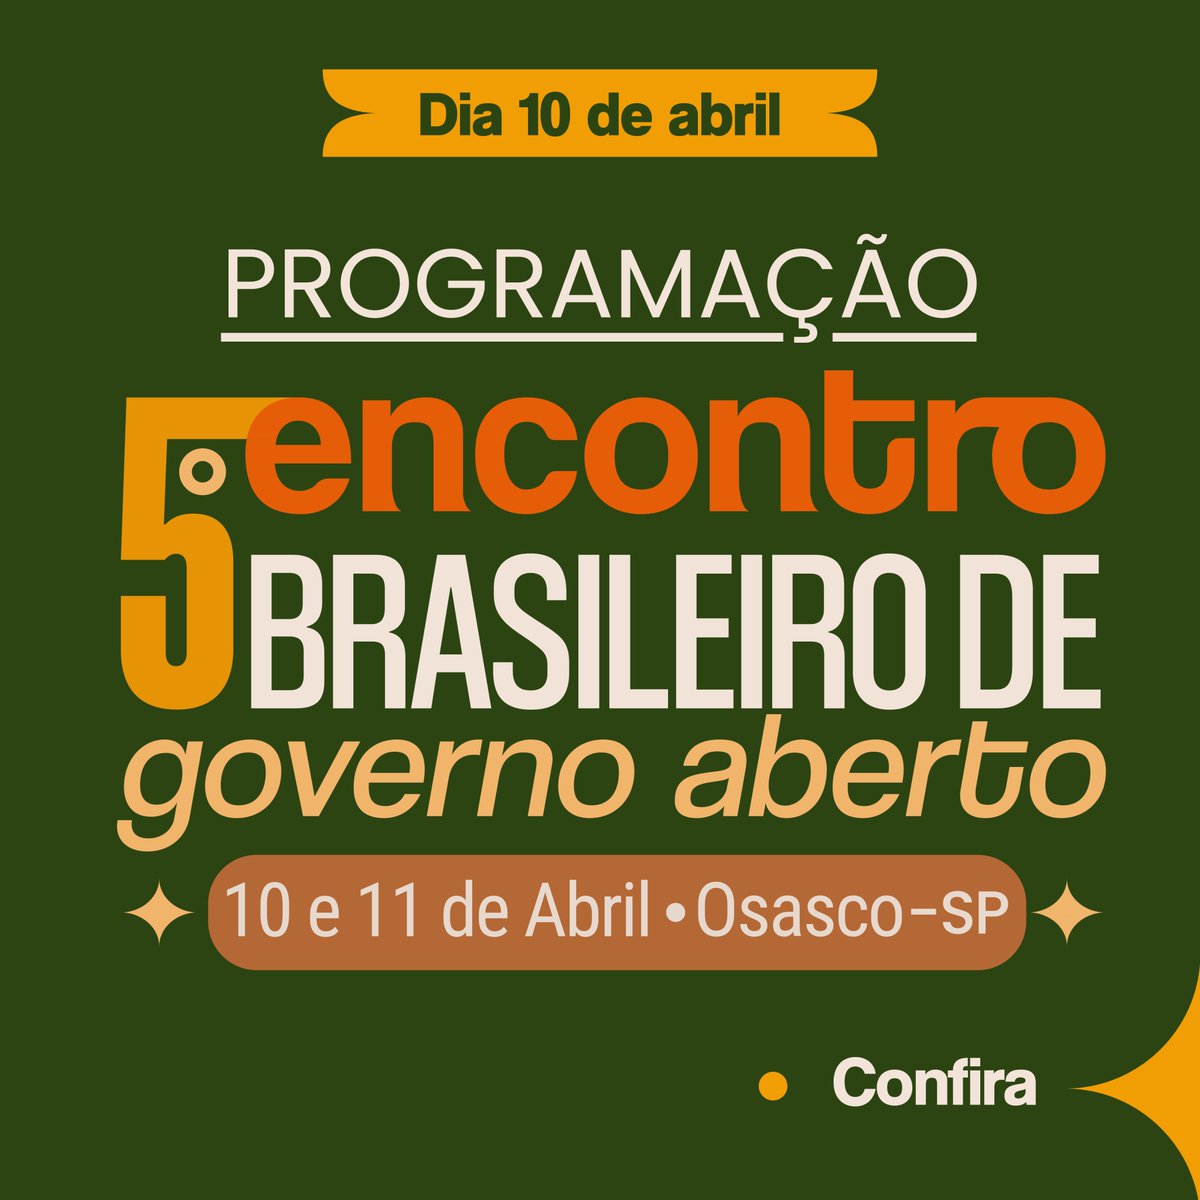 🚀 O 5º Encontro Brasileiro de Governo Aberto começa amanhã, e a programação já está disponível em nosso Instagram. ➡ Confira o carrossel em nosso feed: bit.ly/3xuD7yd 😉 Te esperamos lá!